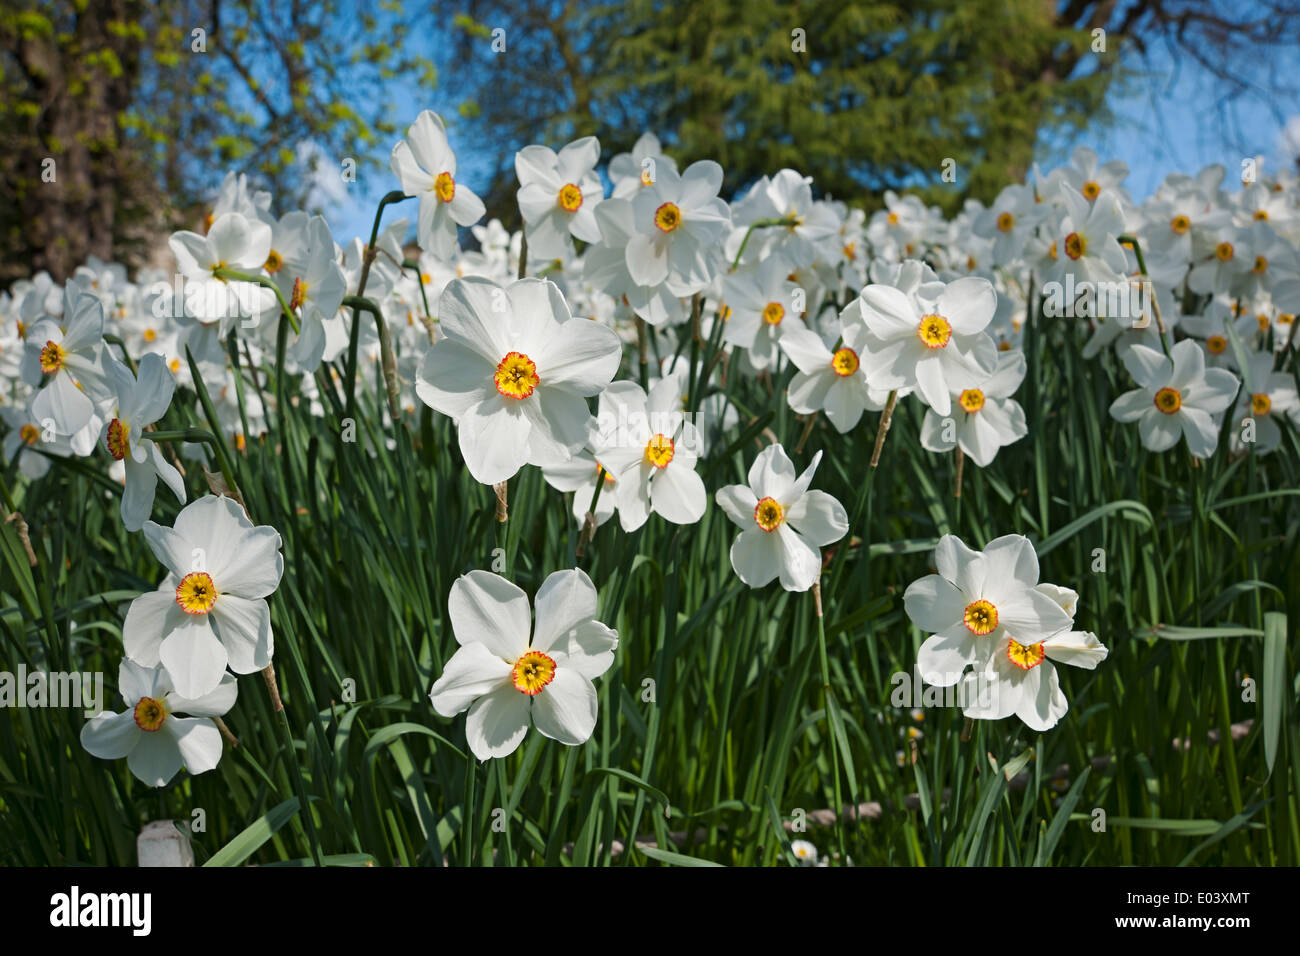 Fleurs blanches narcissi narcissus gros plan fleur floraison dans le jardin de printemps Angleterre Royaume-Uni Grande-Bretagne Banque D'Images